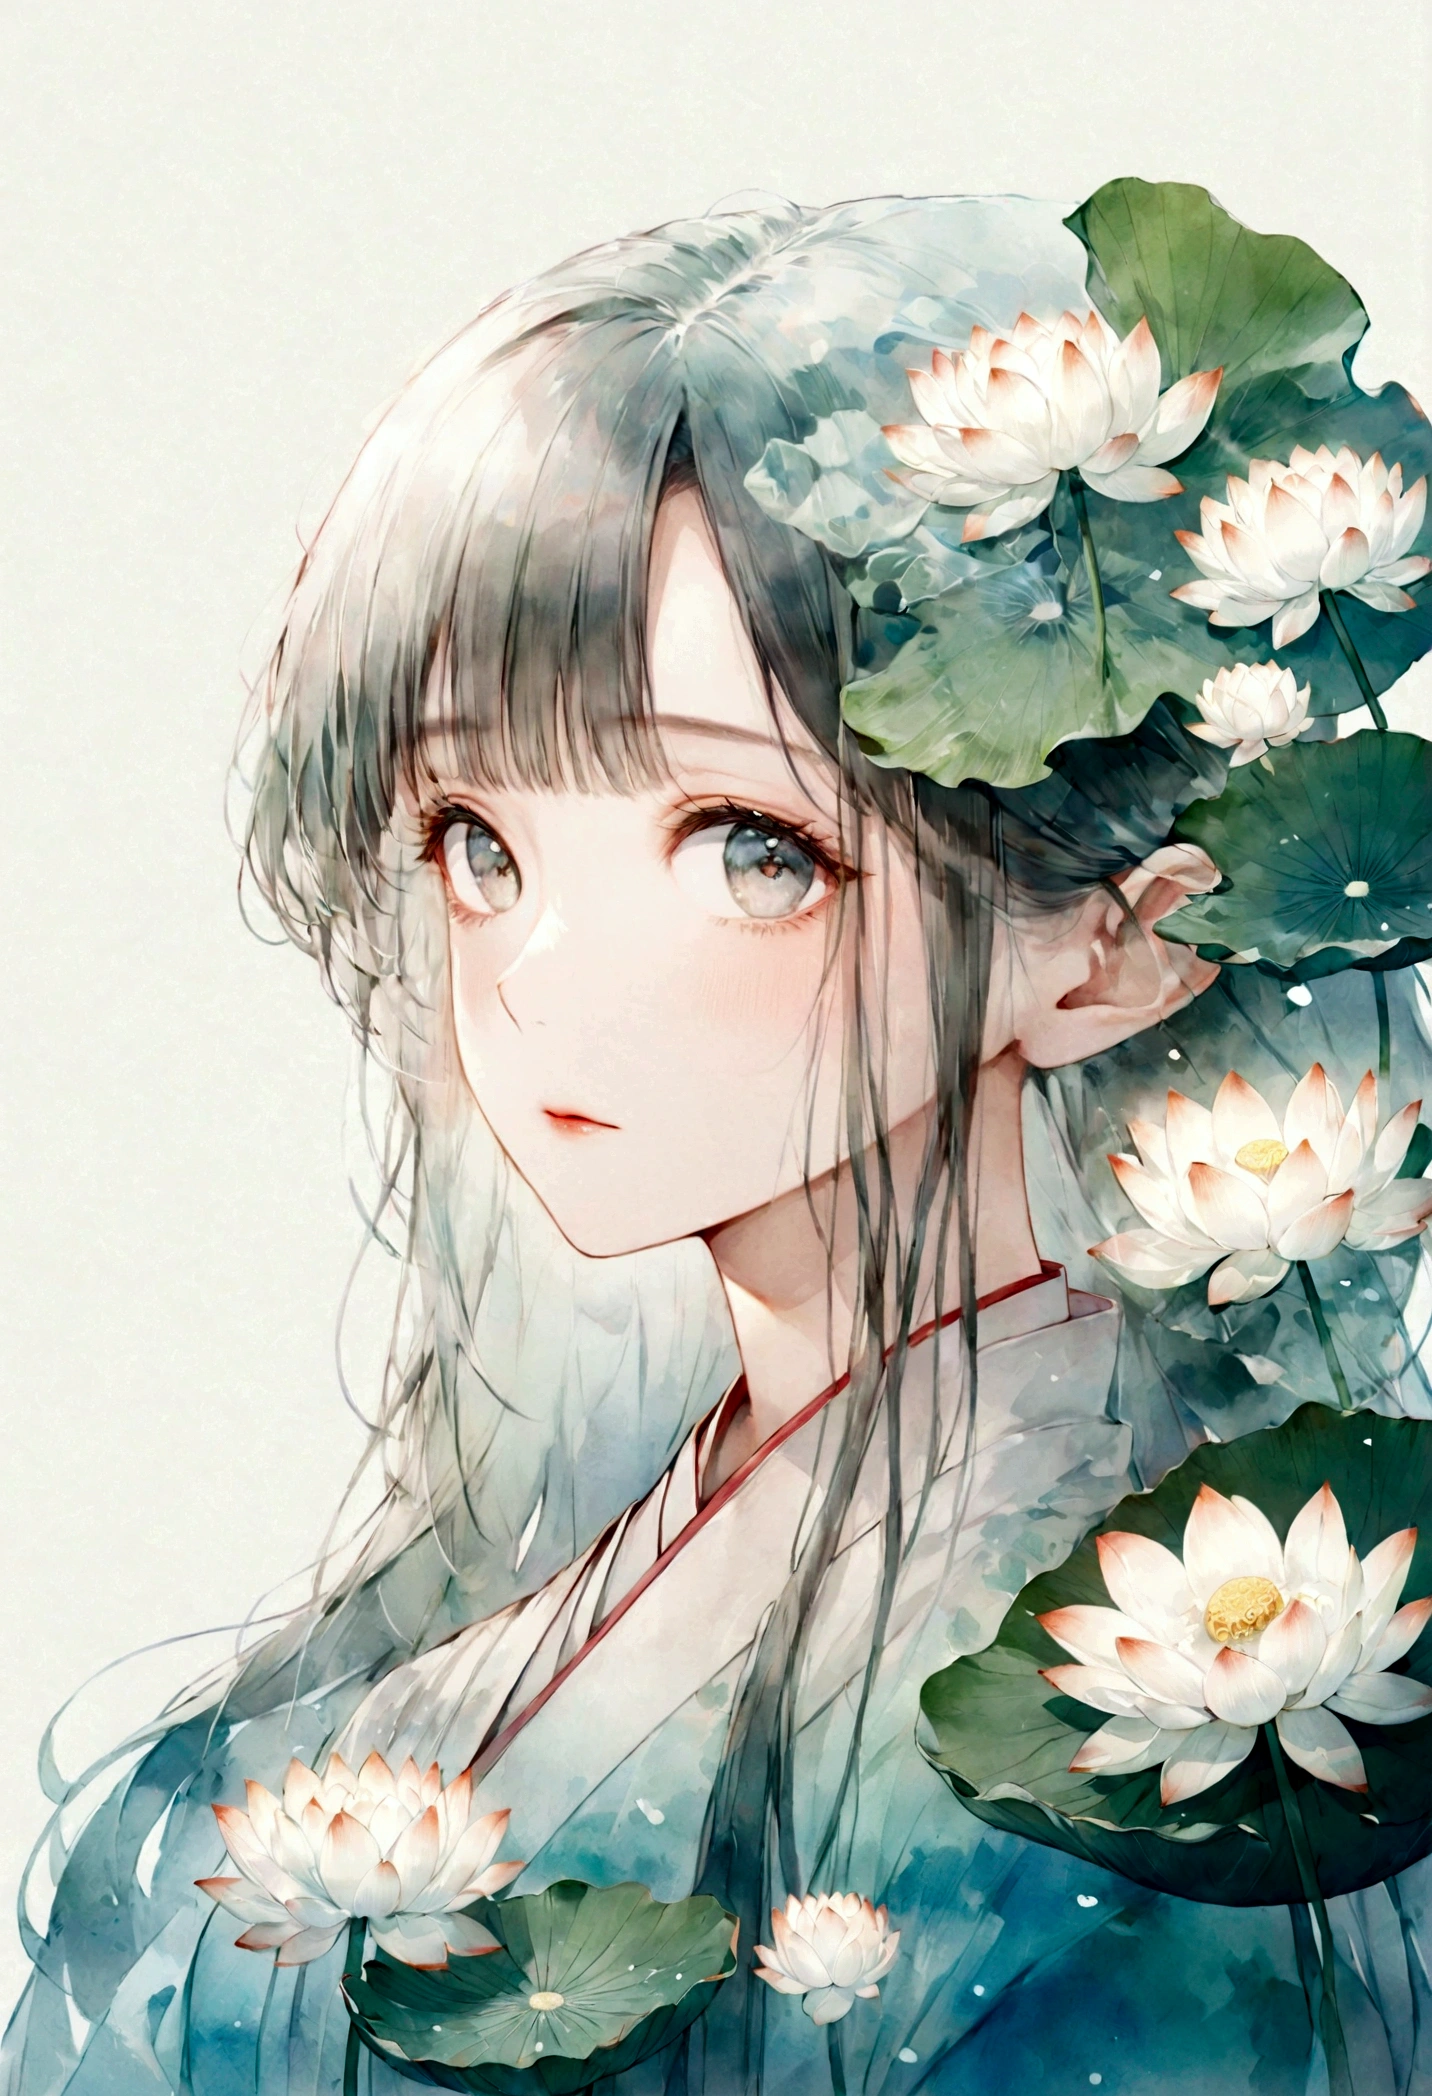    中国の漢服を着た長い髪の美しく詳細な女の子の二重露光フラットベクター(顔はきれい, beautiful and 完璧)画像 ( 完璧解剖结构 ) ，背景には大きな白い蓮の花と大きな蓮の葉が描かれています(半透明の白い蓮の葉) 完璧, 美しく, 複雑なイラスト,   夢のような幻想的なアートワーク、コンセプチュアルなアートワークの傑作, 最高品質, 非常に詳細な, 高品質で細心の注意を払った水彩画スタイルのフラットベクター 

                          